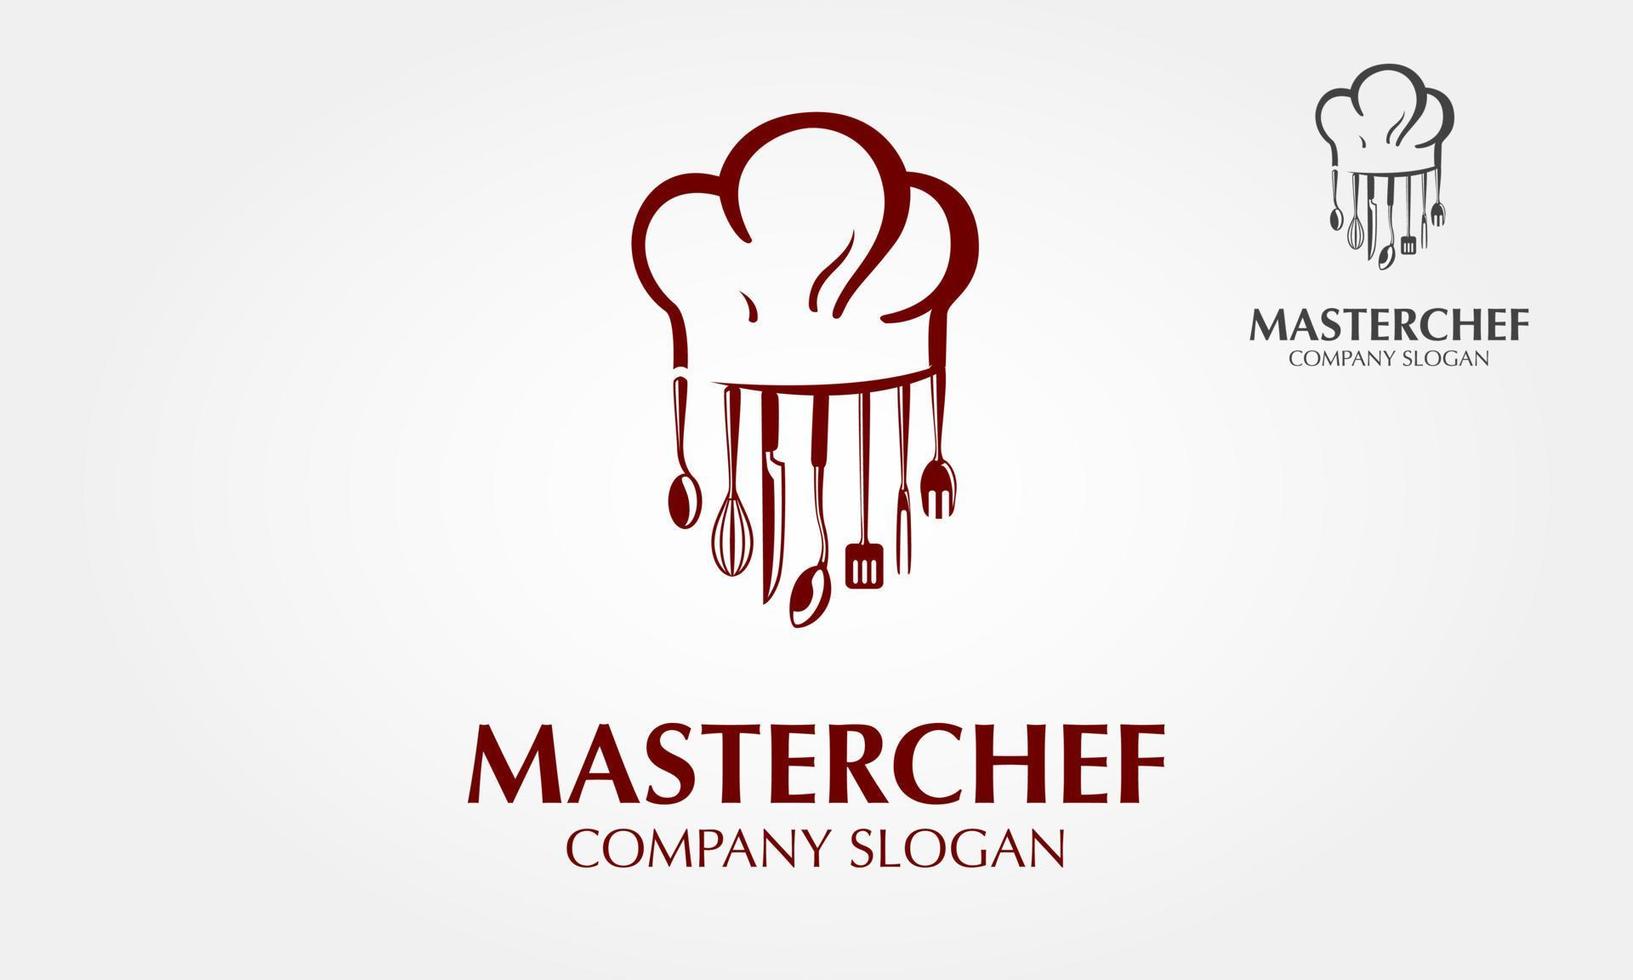 plantilla de logotipo de vector de maestro chef. use este logotipo para un chef, restaurante, catering o cualquier servicio relacionado con alimentos. ilustración del logotipo vectorial. estilo limpio y moderno sobre fondo blanco.